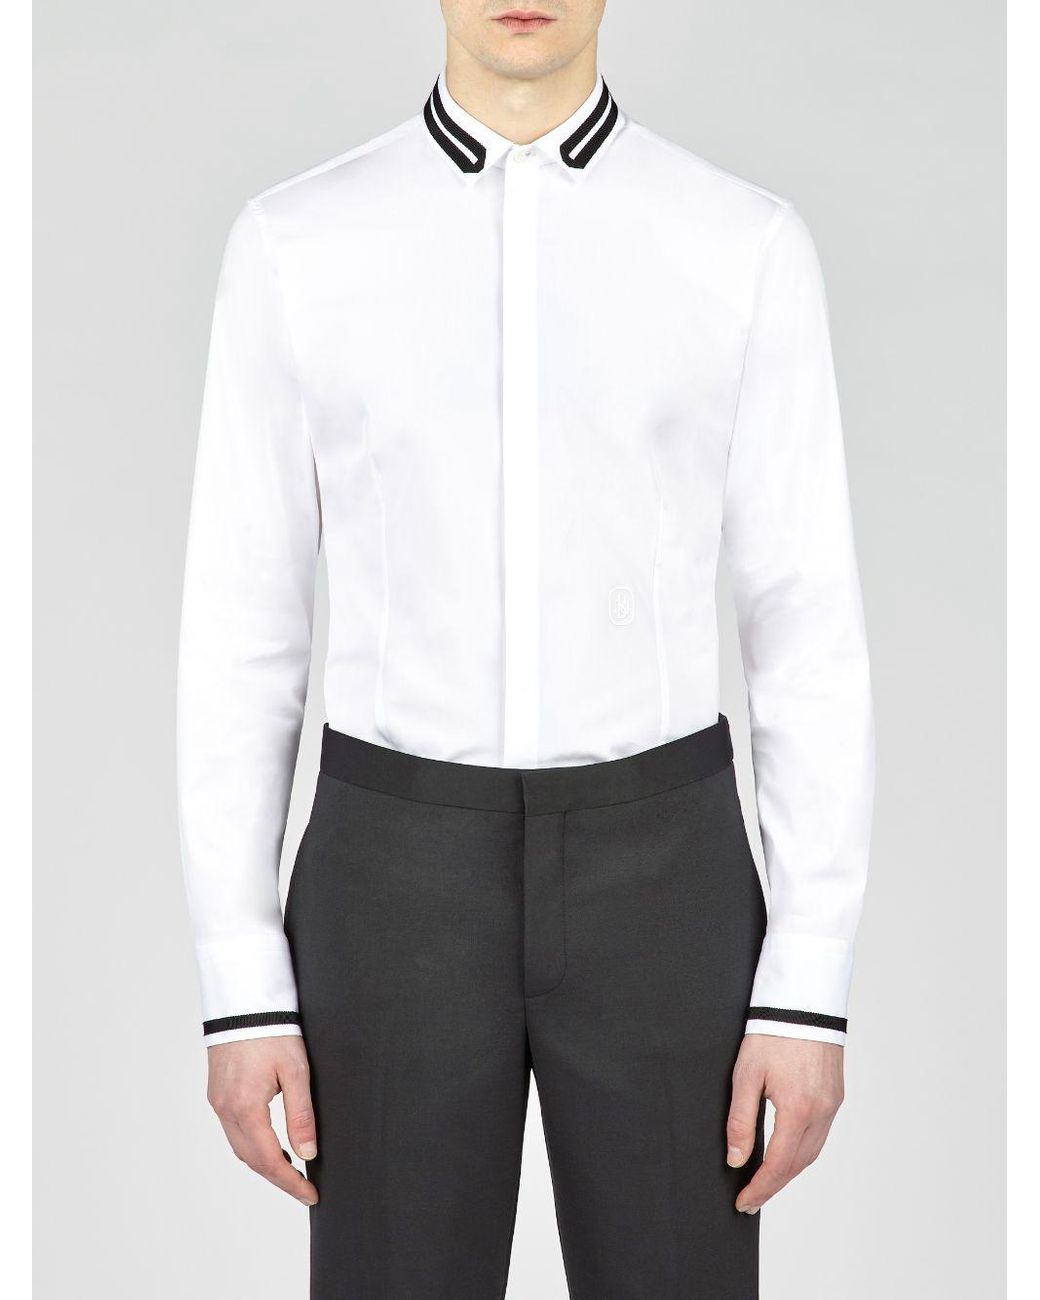 Neil Barrett Varsity Stripe Ribbon Tuxedo Shirt in White for Men - Lyst